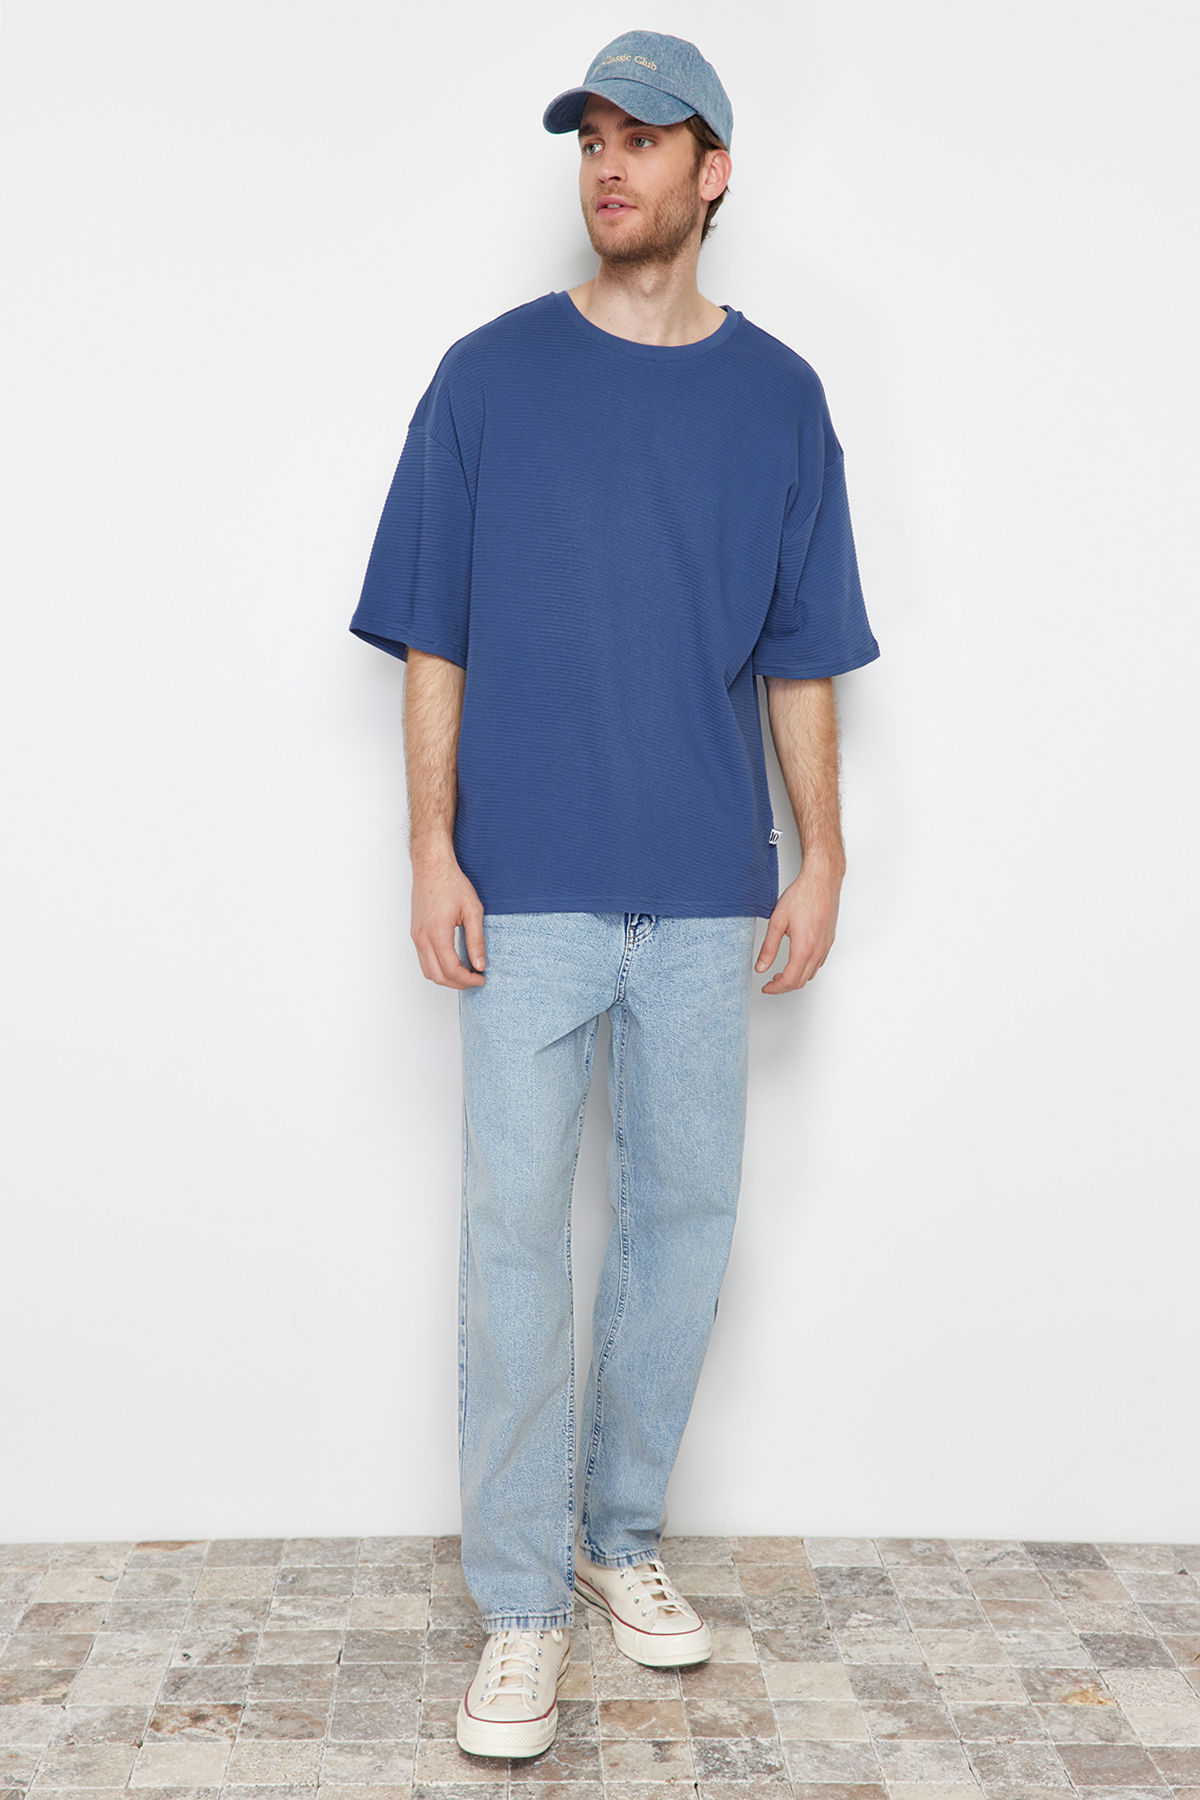 Trendyol Indigo Men's Oversize Textured 100% Cotton T-Shirt